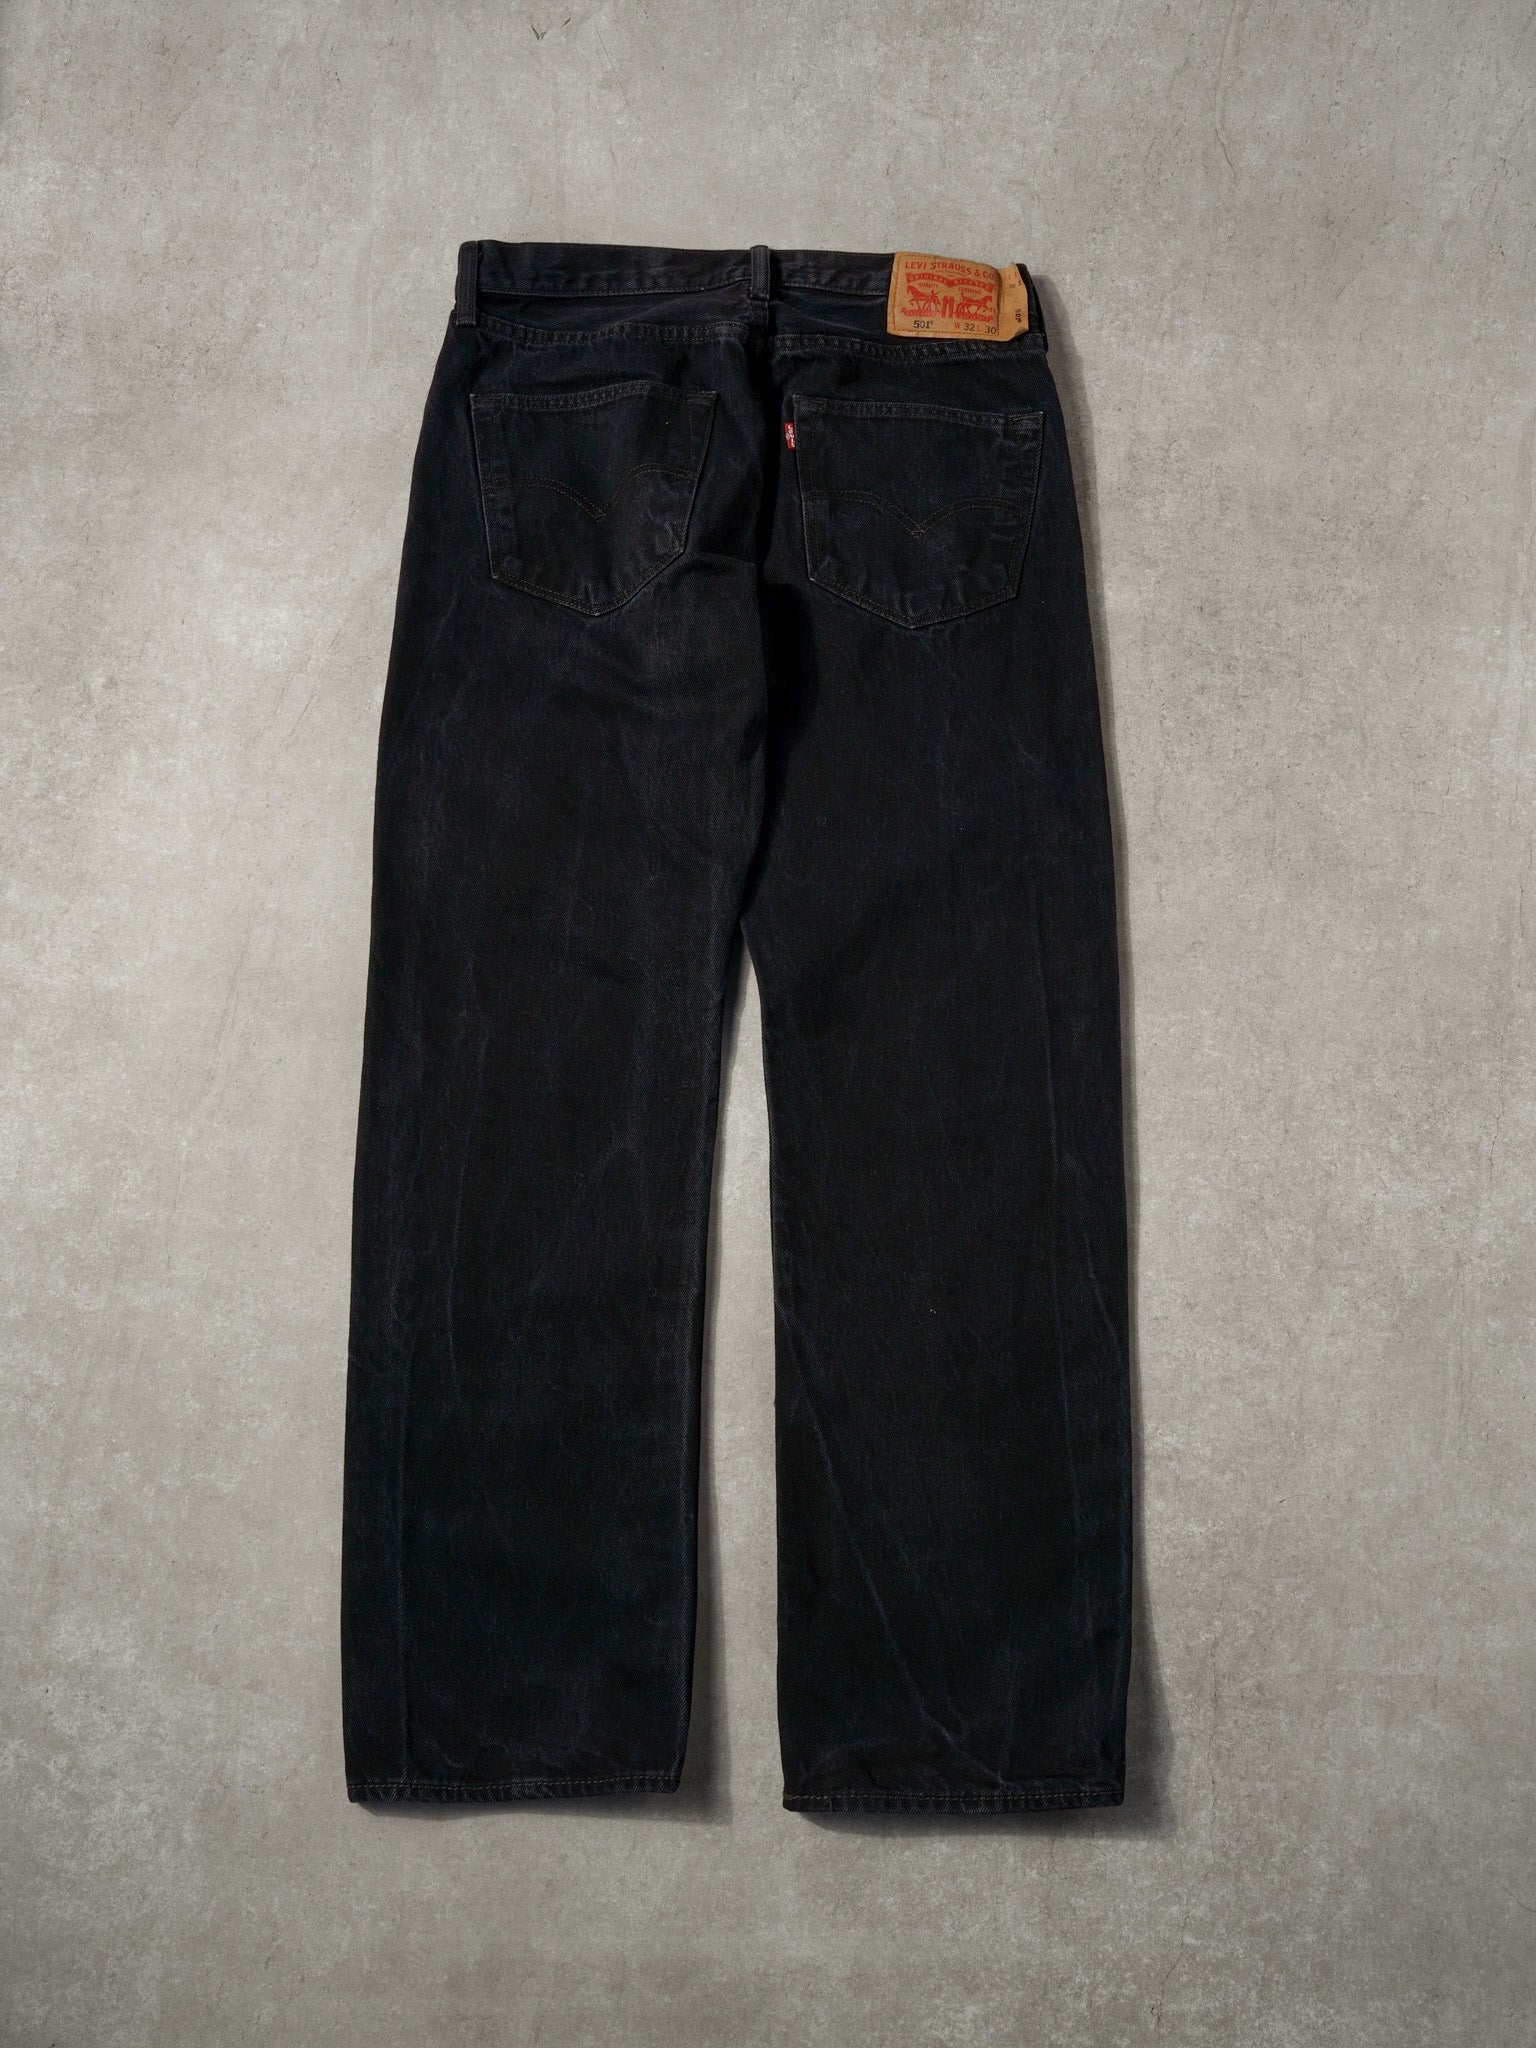 Vintage 90s Black Levi's 510 Denim Jeans (32x30)